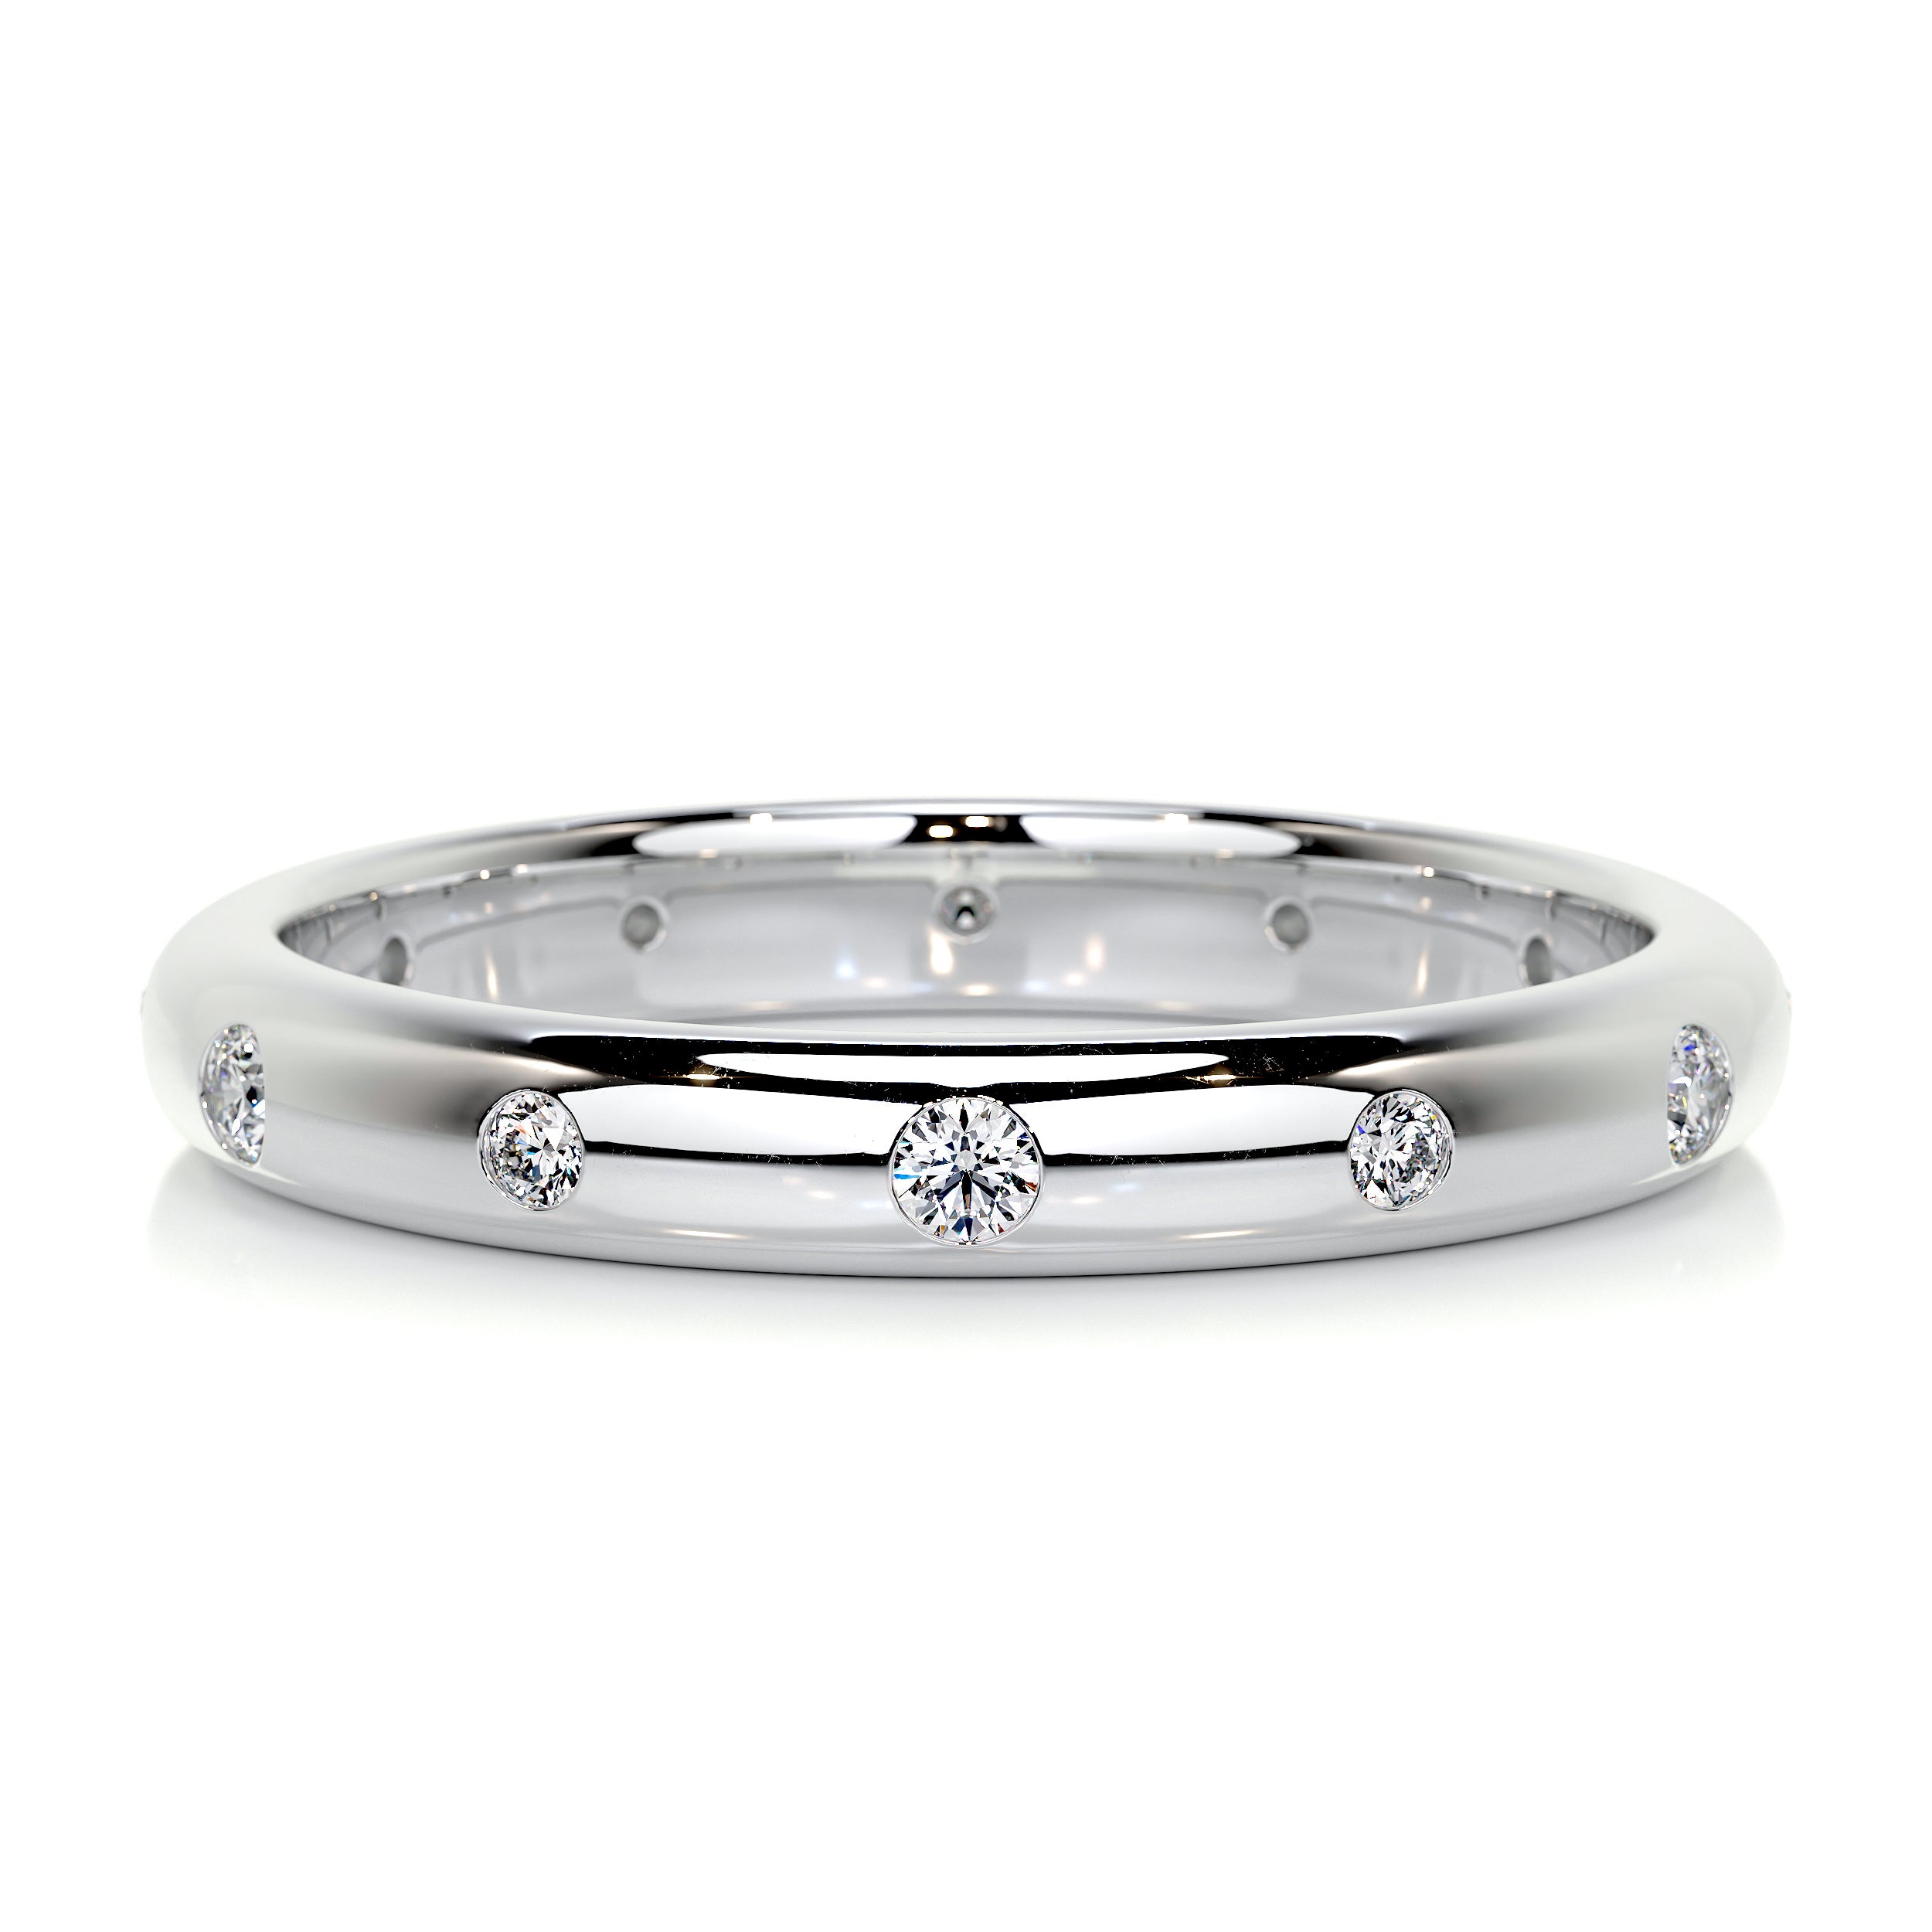 Zara Diamond Wedding Ring   (0.18 Carat) -18K White Gold